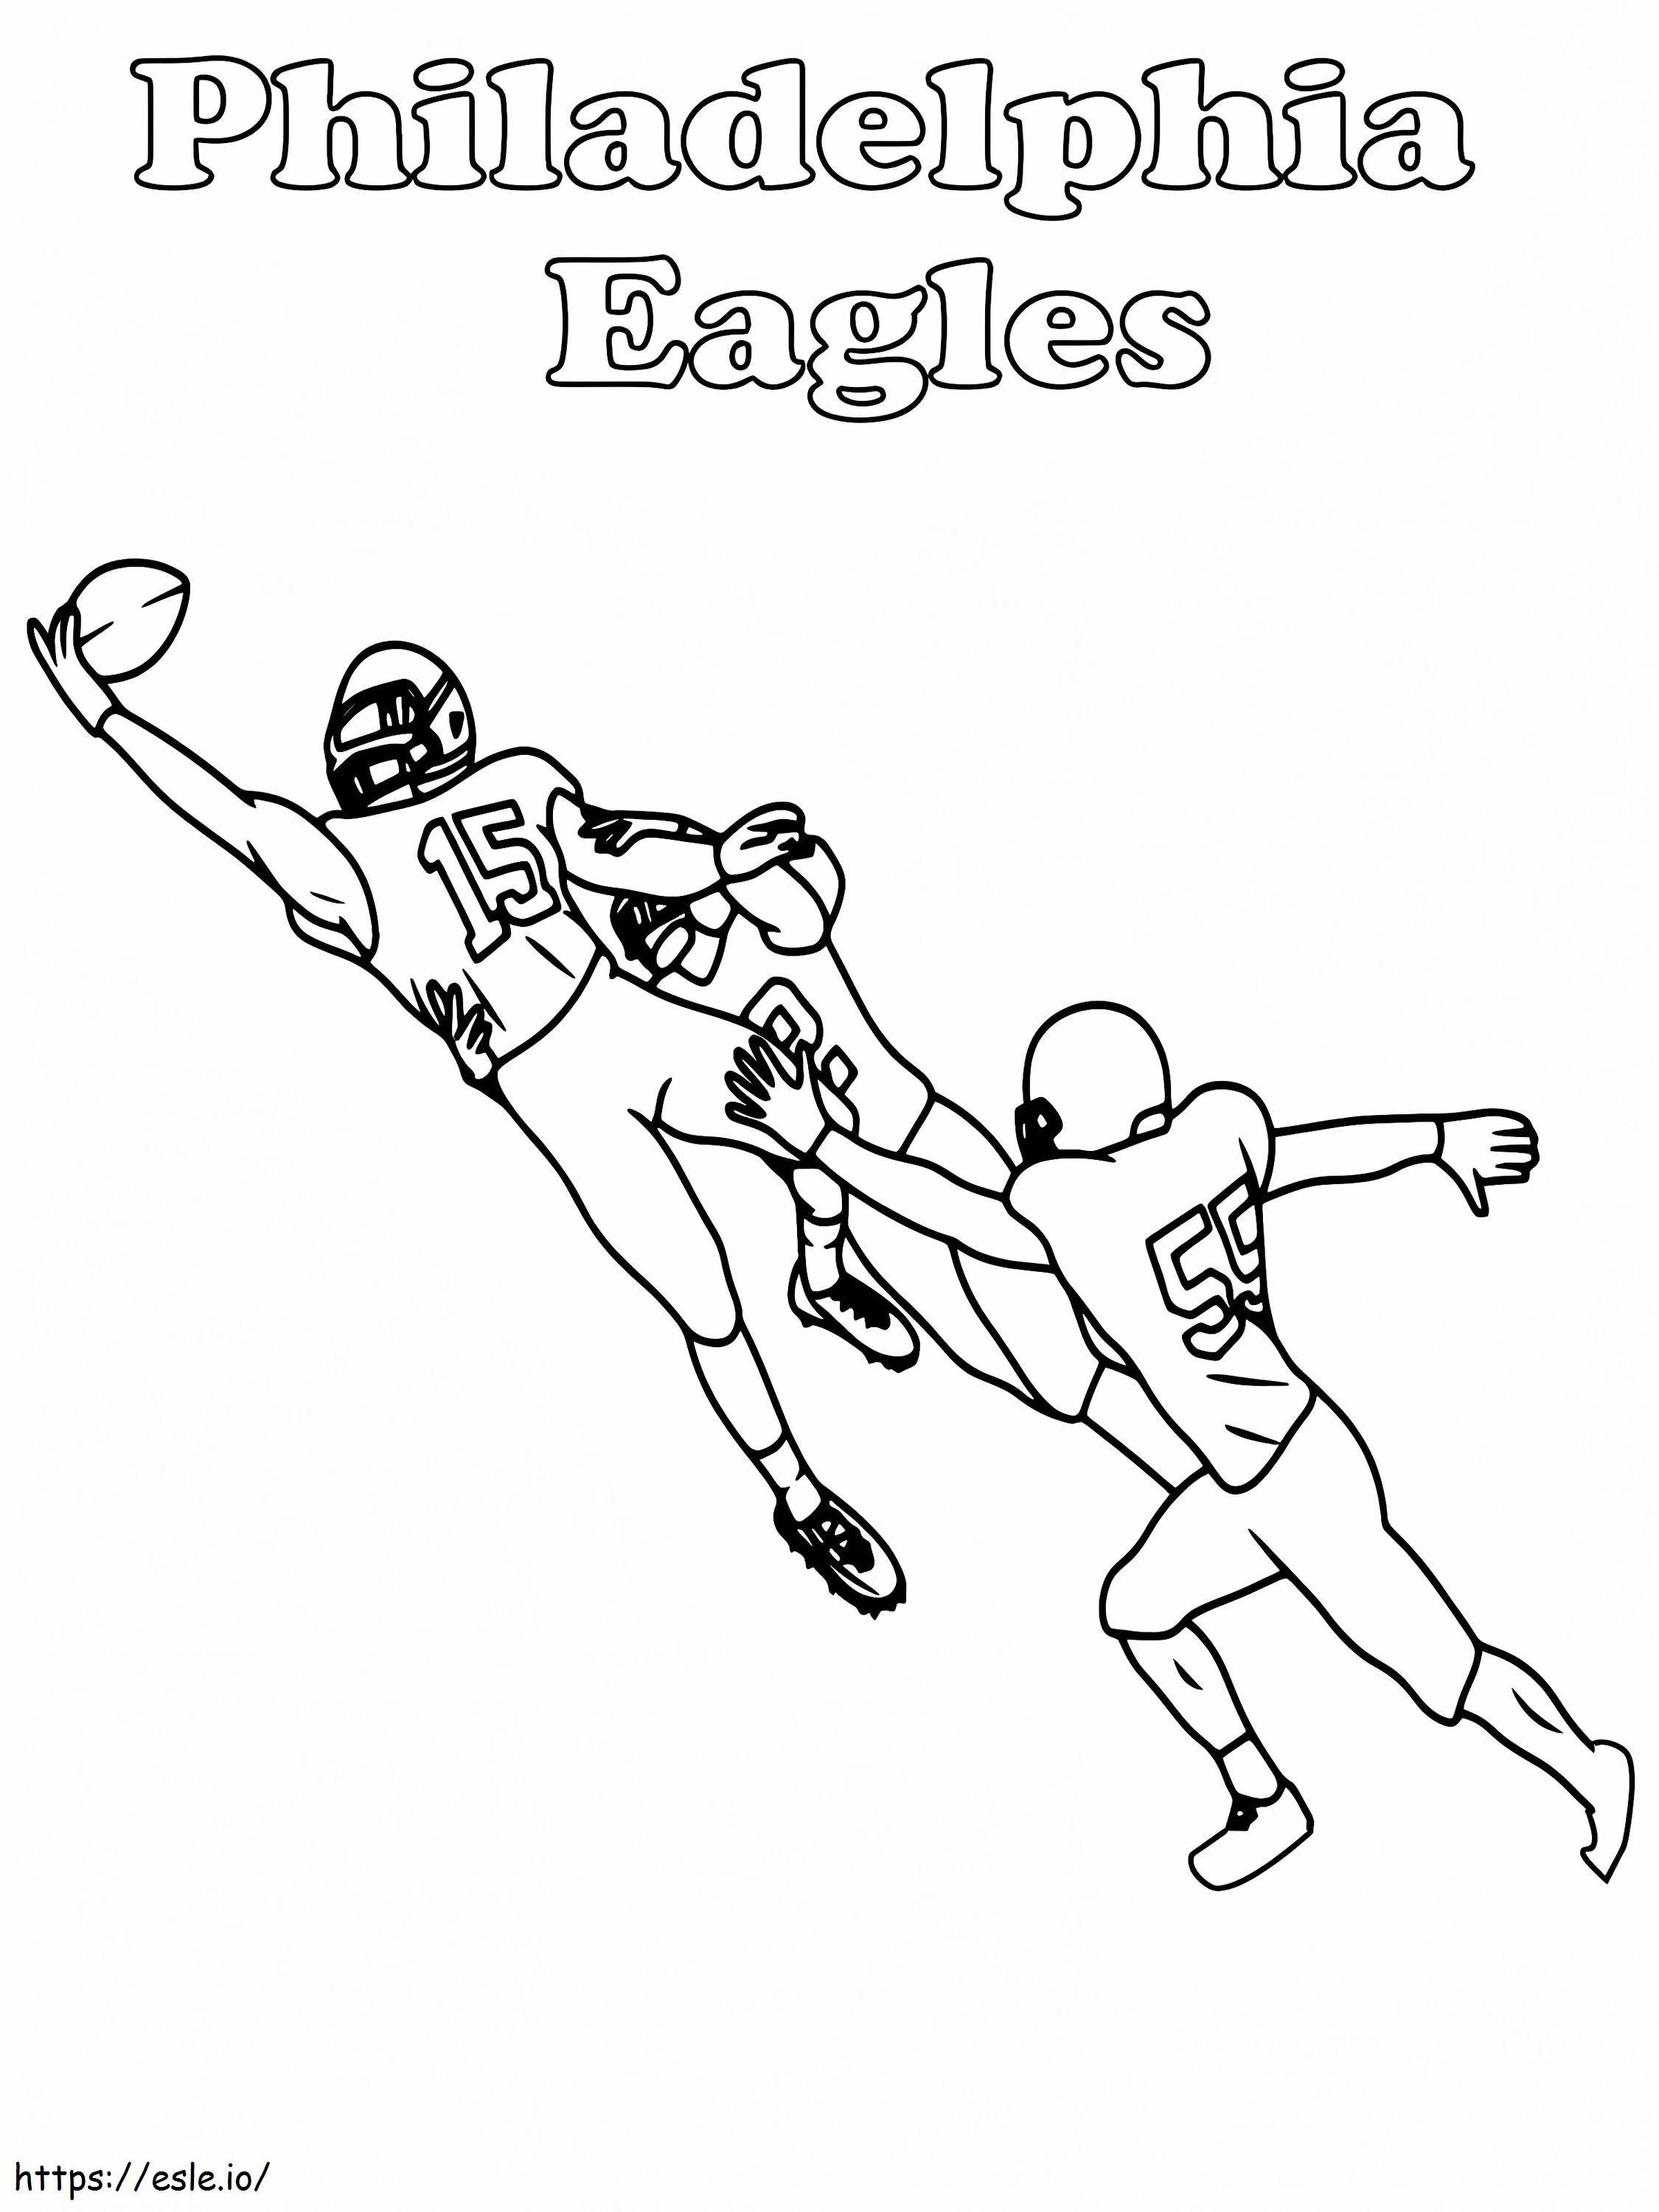 Captura de jugador de Philadelphia Eagles para colorear